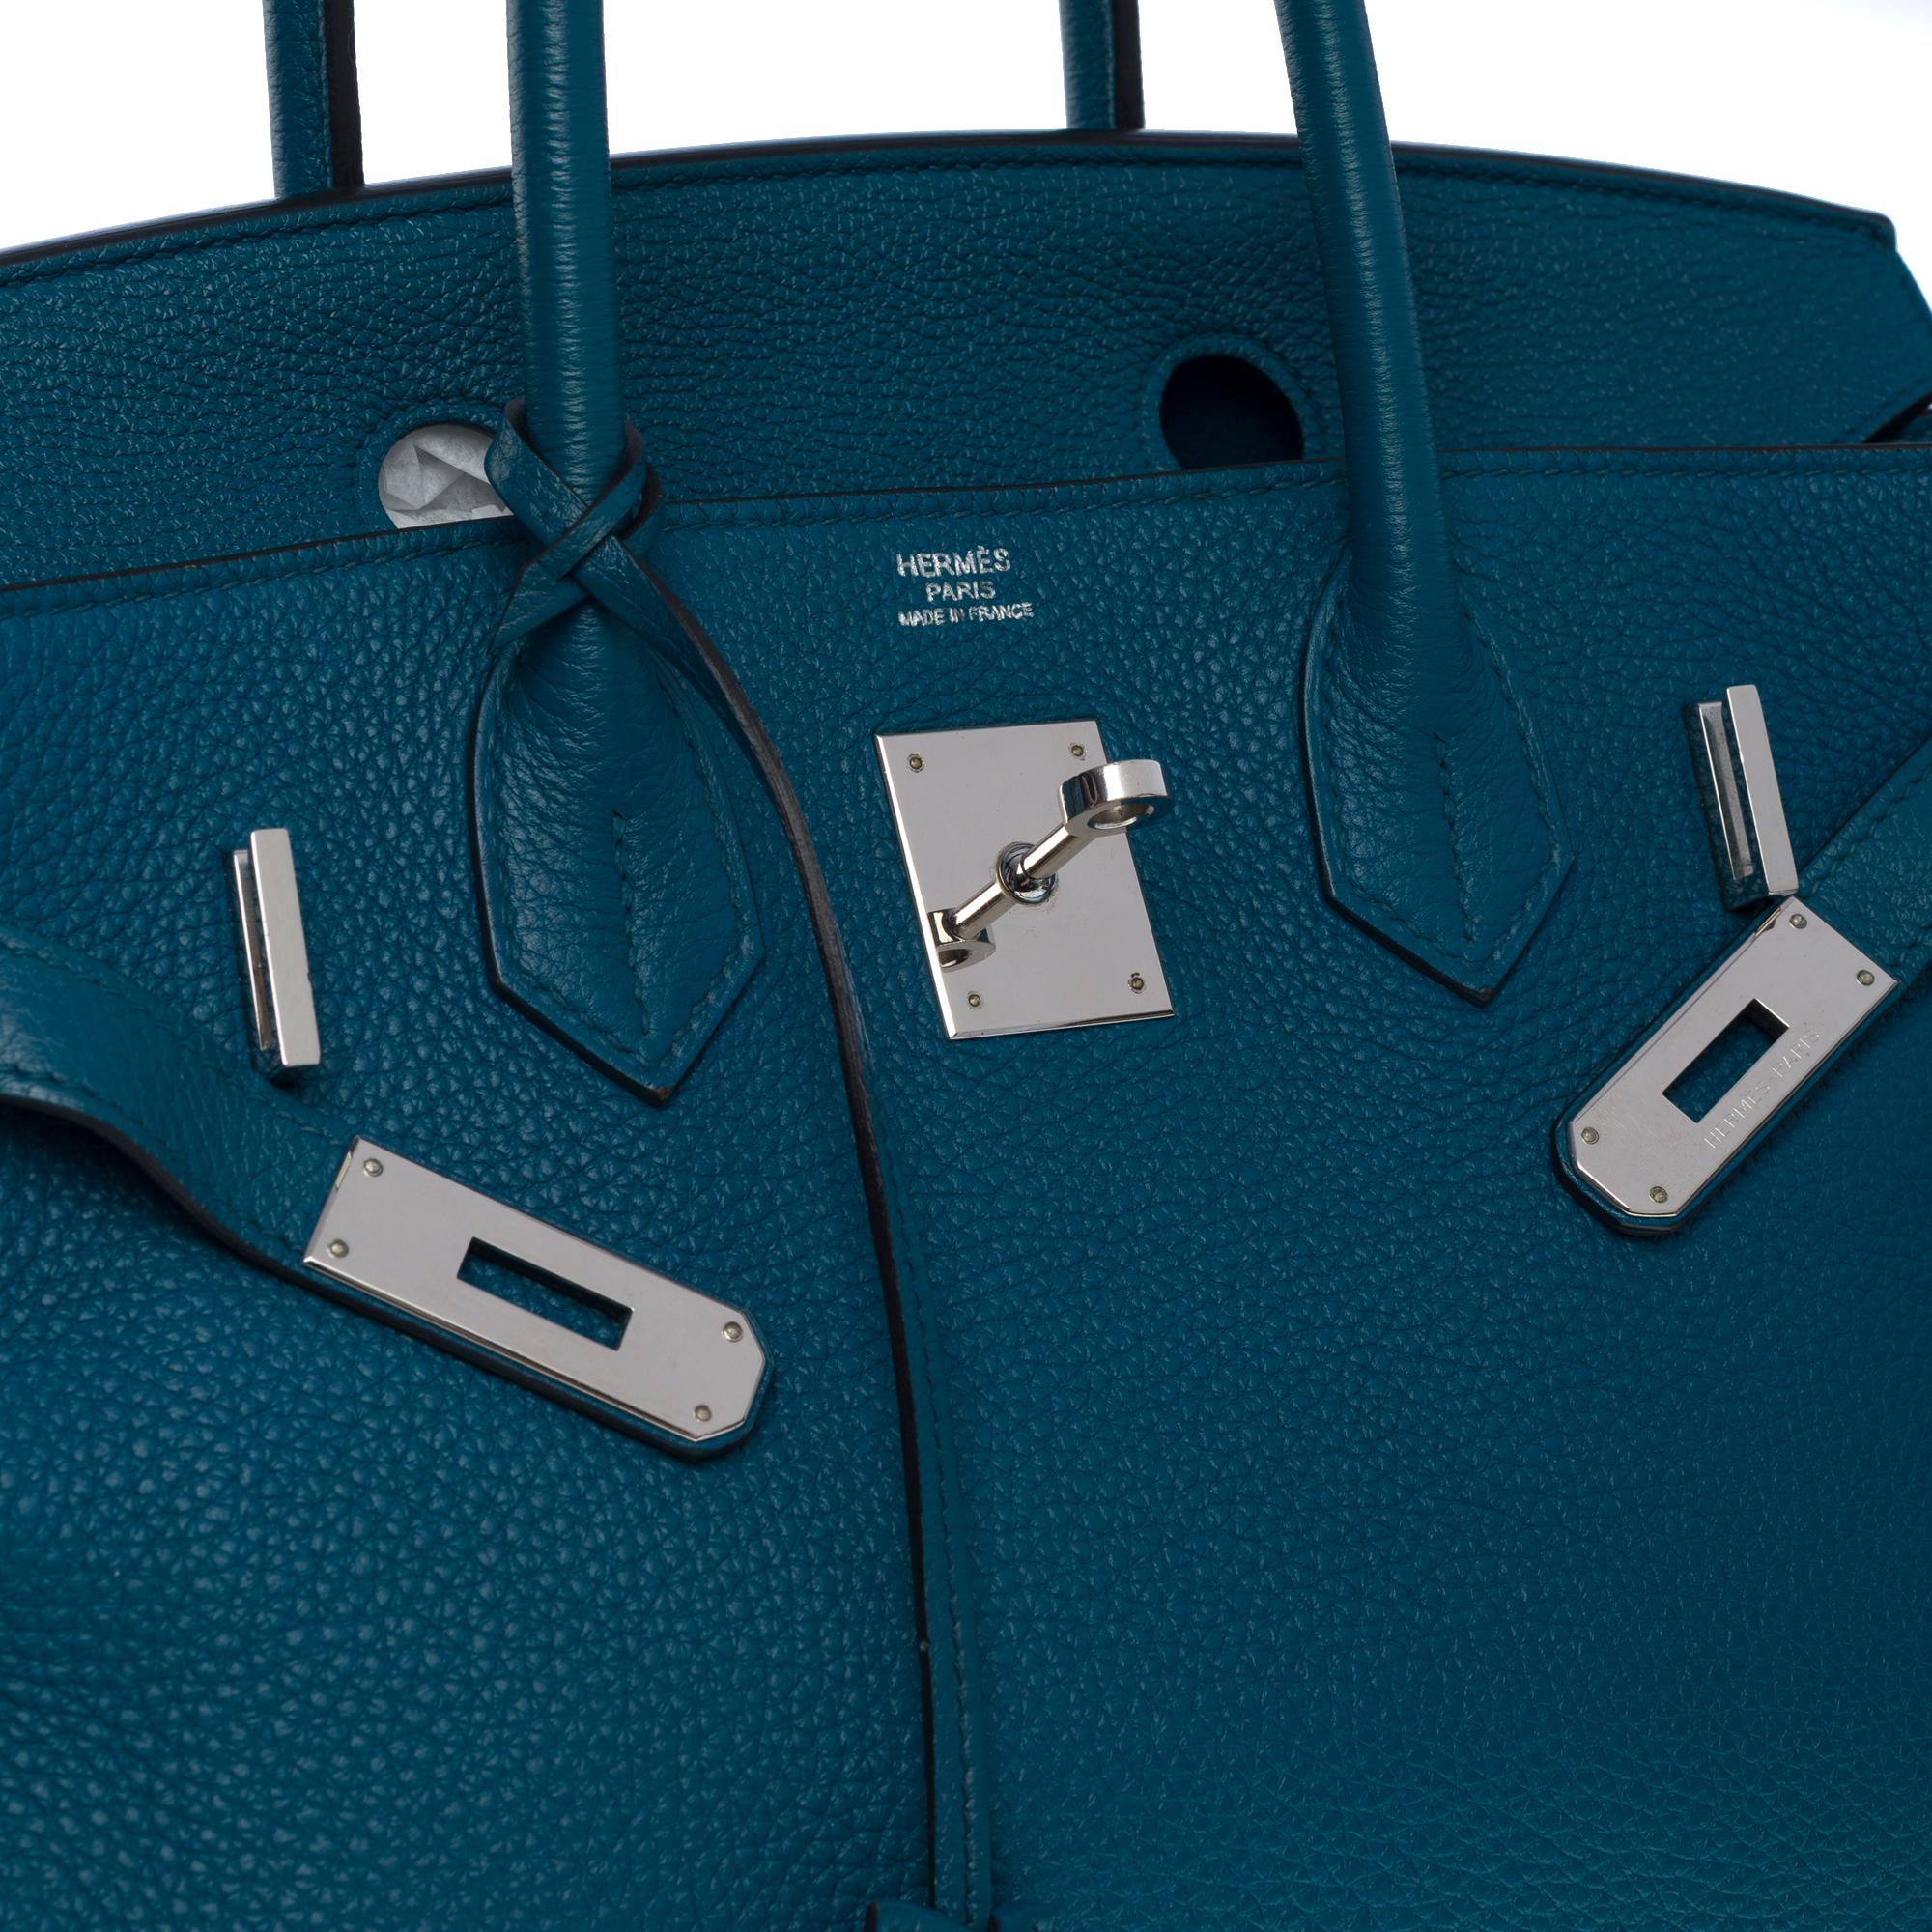 Amazing Hermès Birkin 30 handbag in Blue Colvert Togo leather, SHW 2